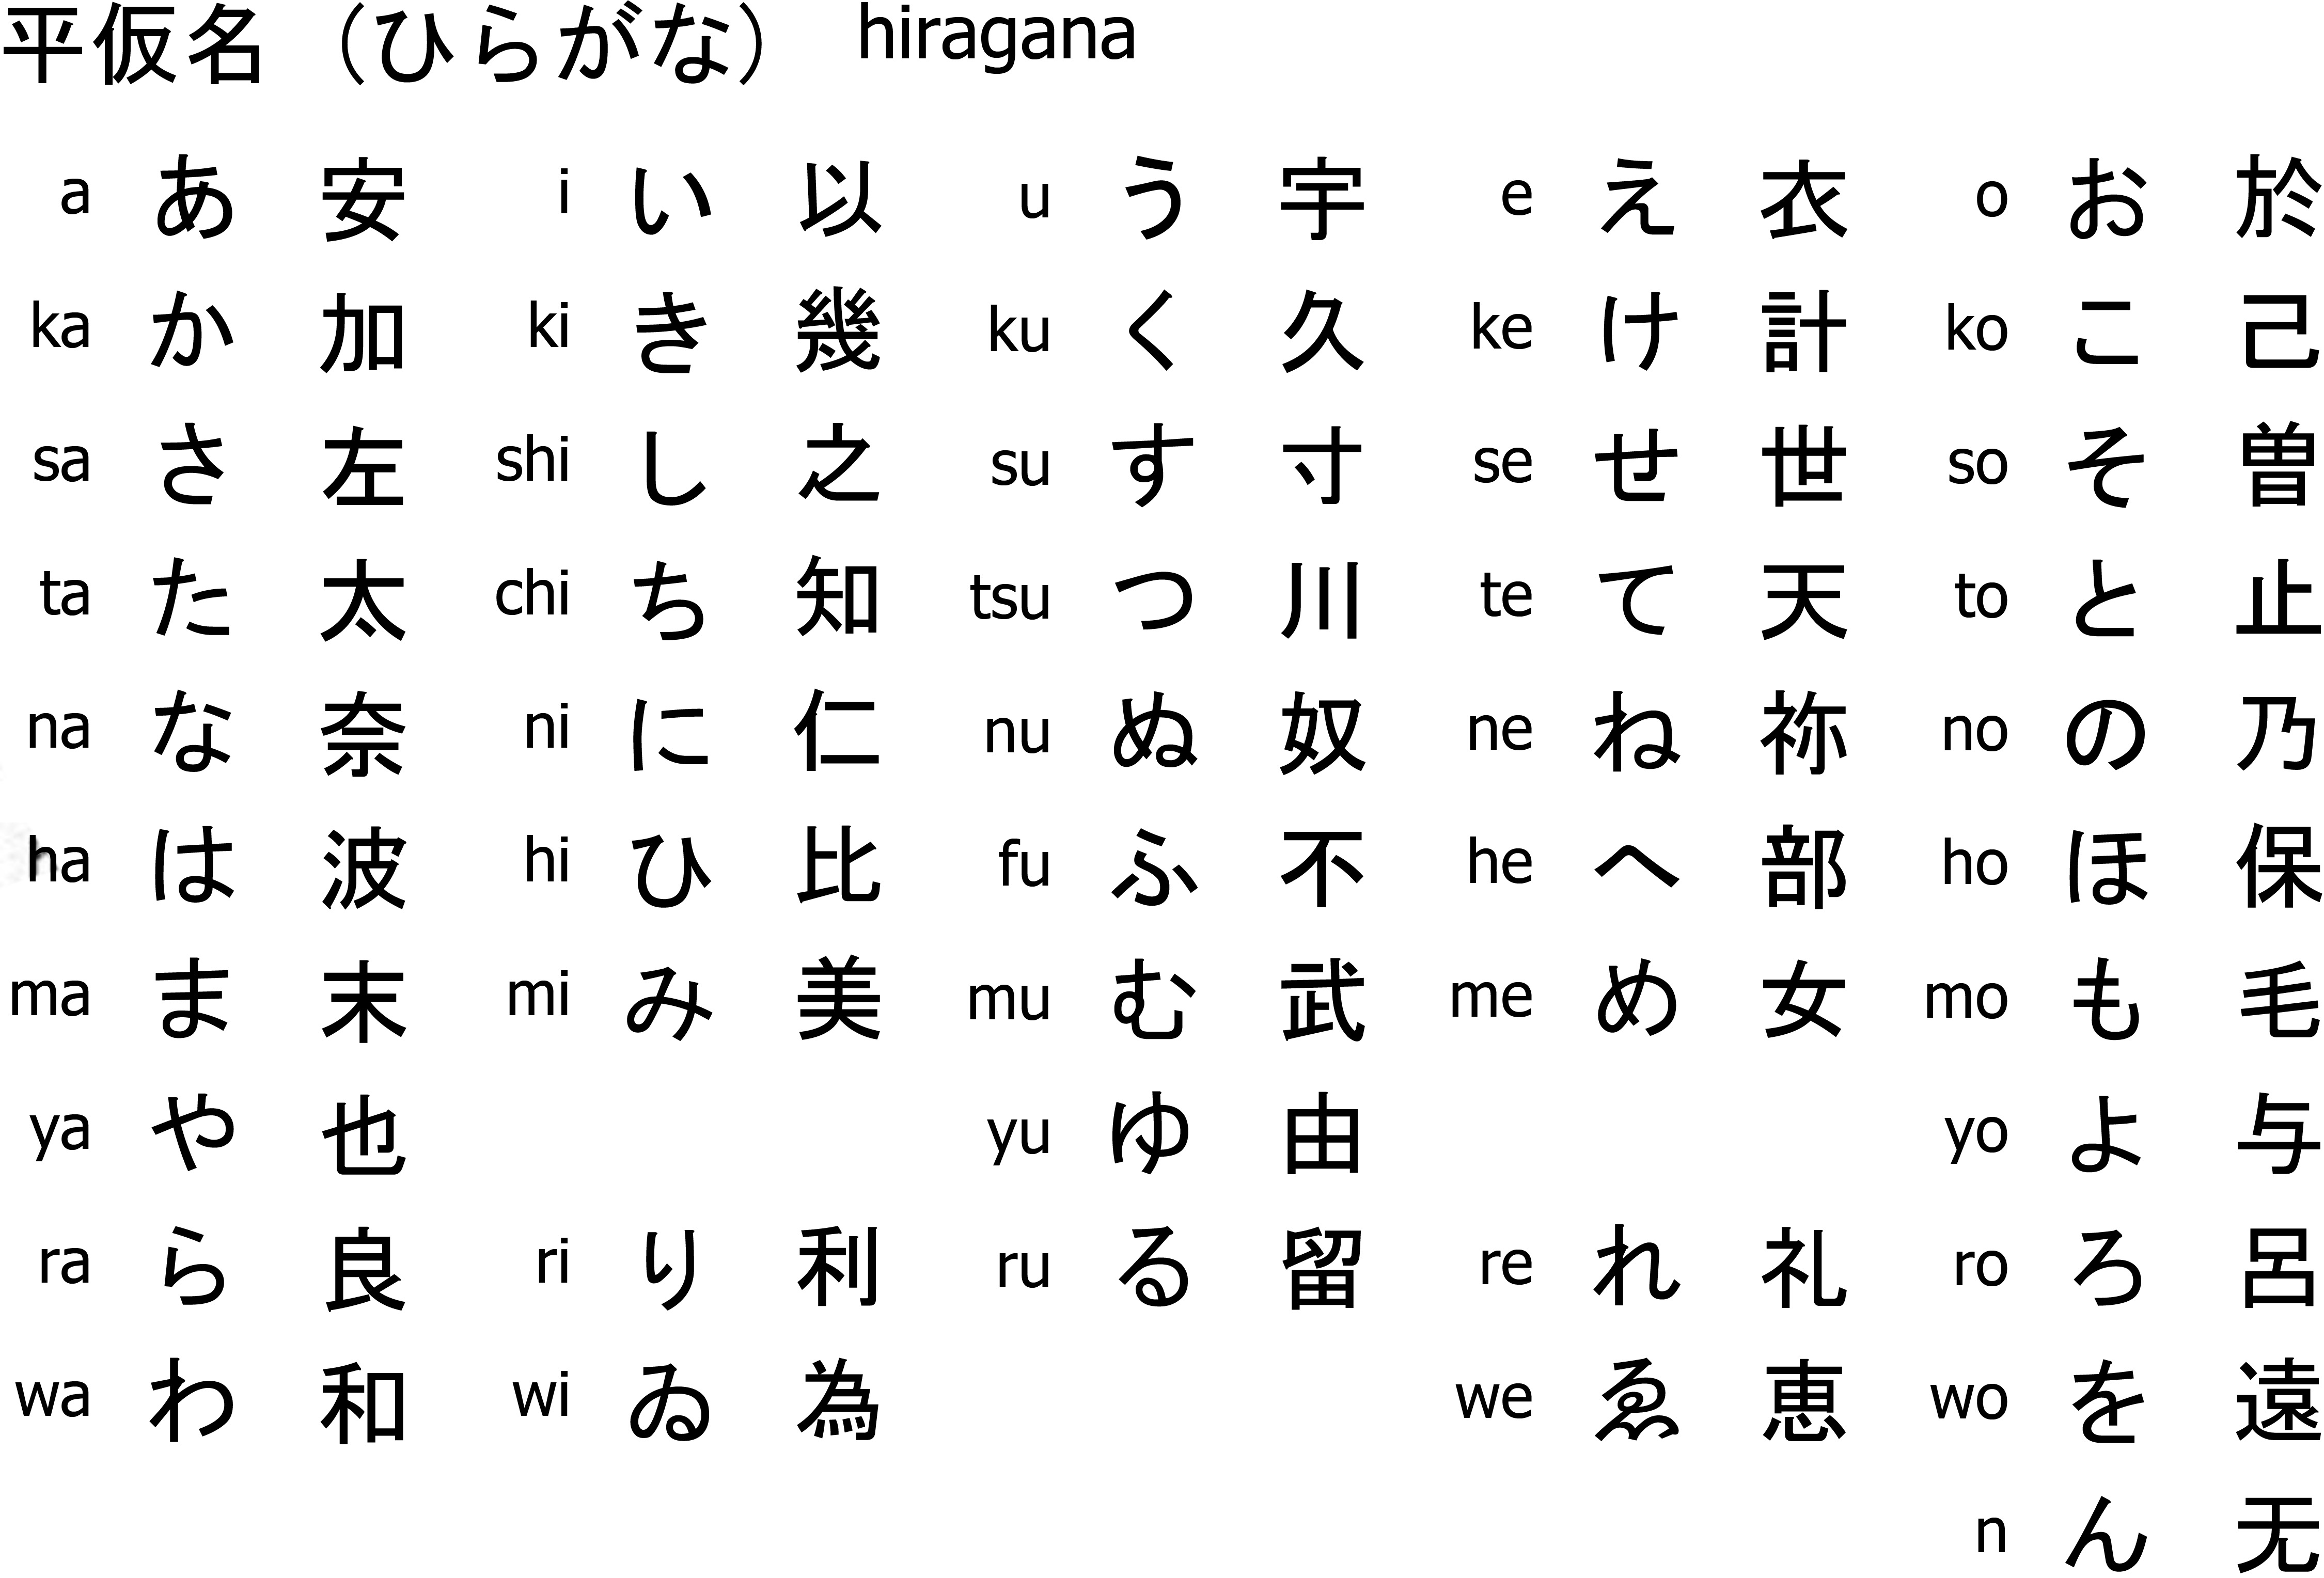 19 Downloadable Hiragana Charts